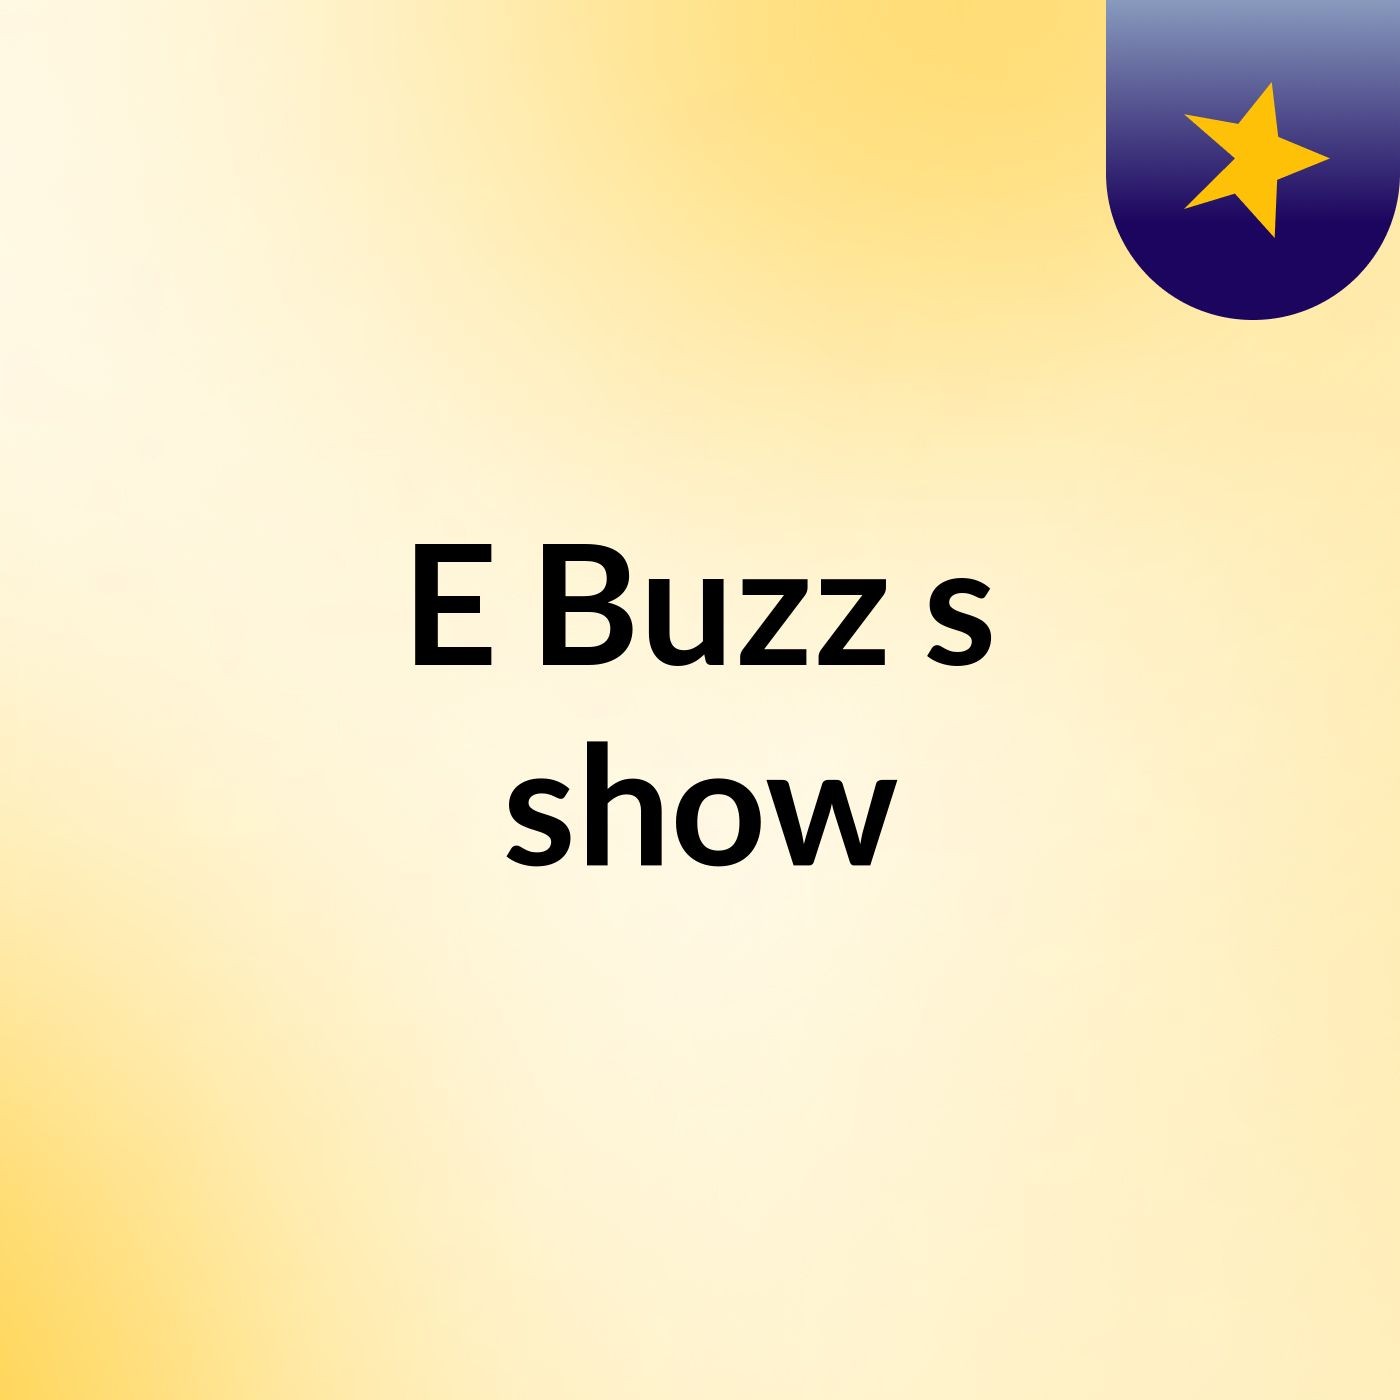 E Buzz's show